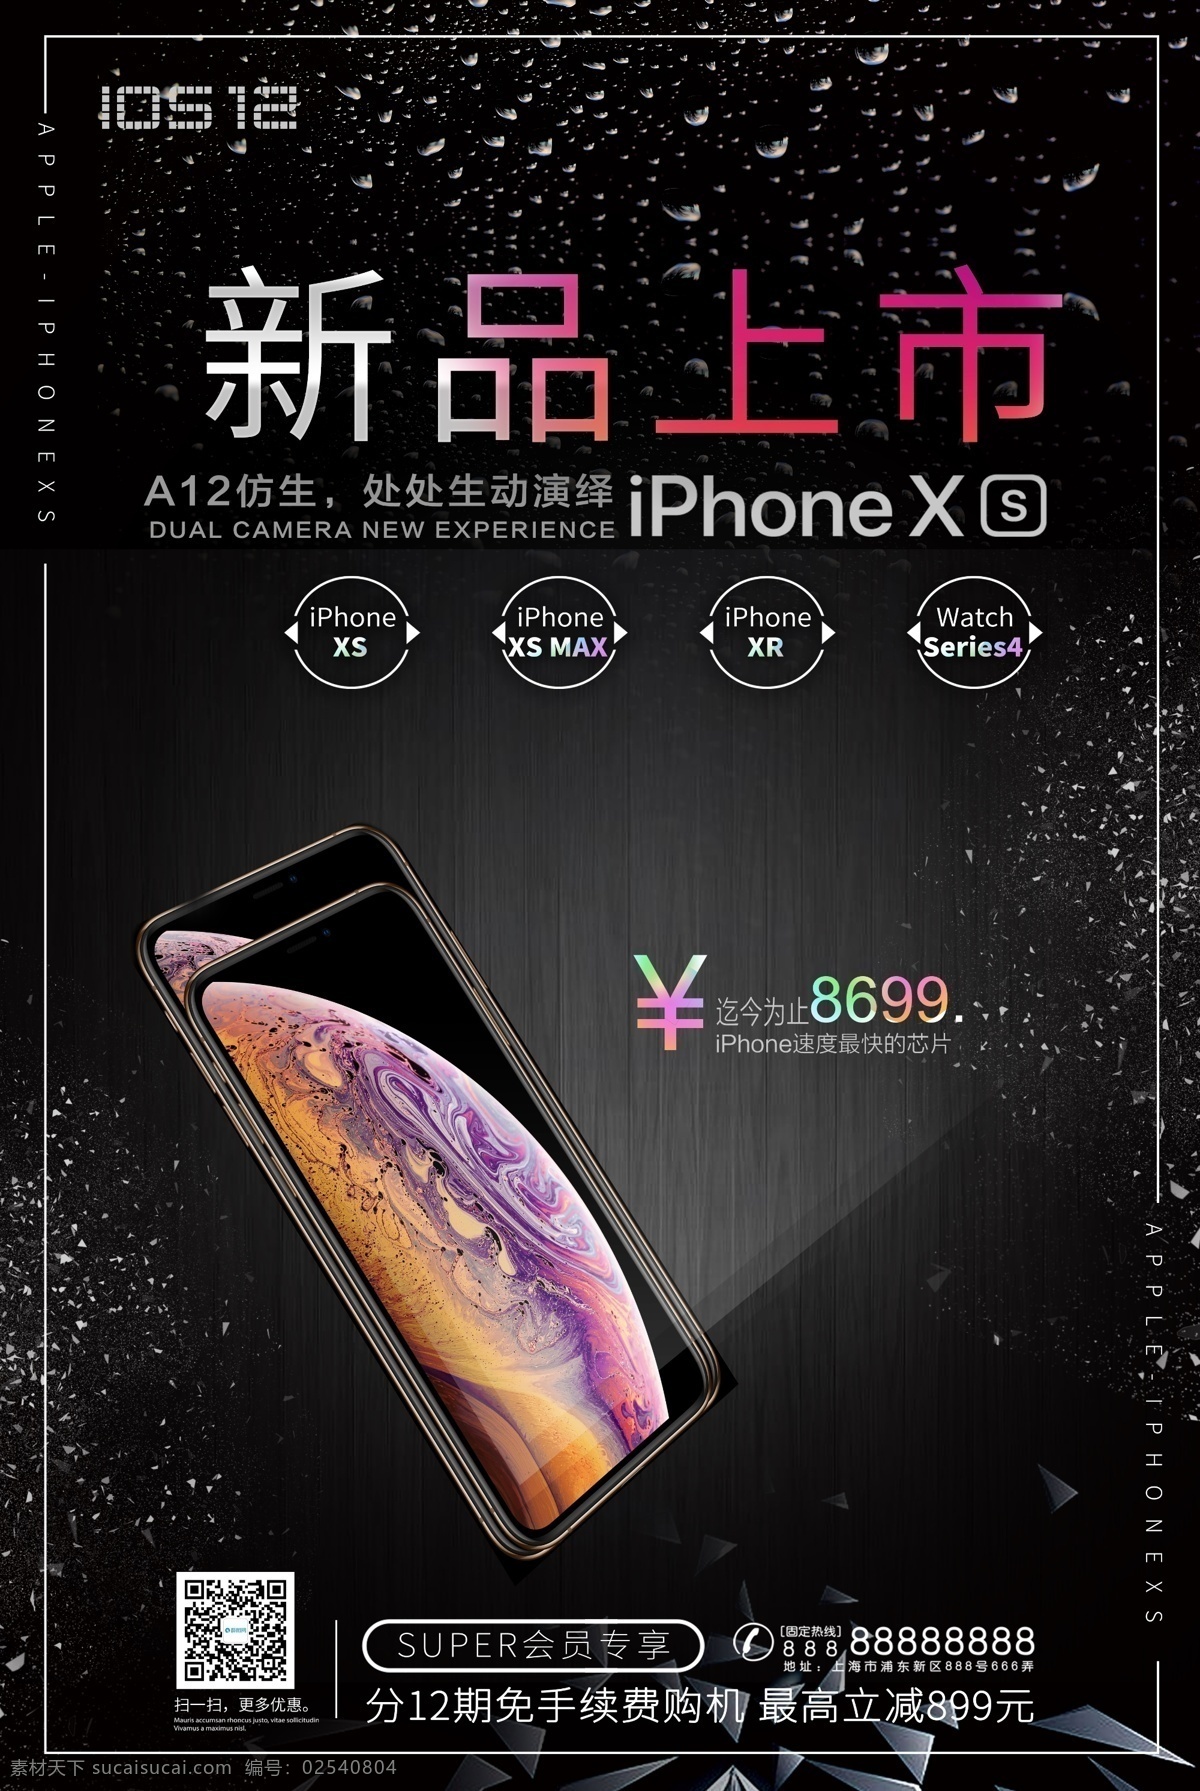 苹果 xs 手机 新品上市 海报 iphone iphonexs xr a12 新品发布会 苹果手机 plus 预售 发布会 科技 分期付款 会员 专享 送货 分期 付款 新品 智能 全球 火热 科技黑